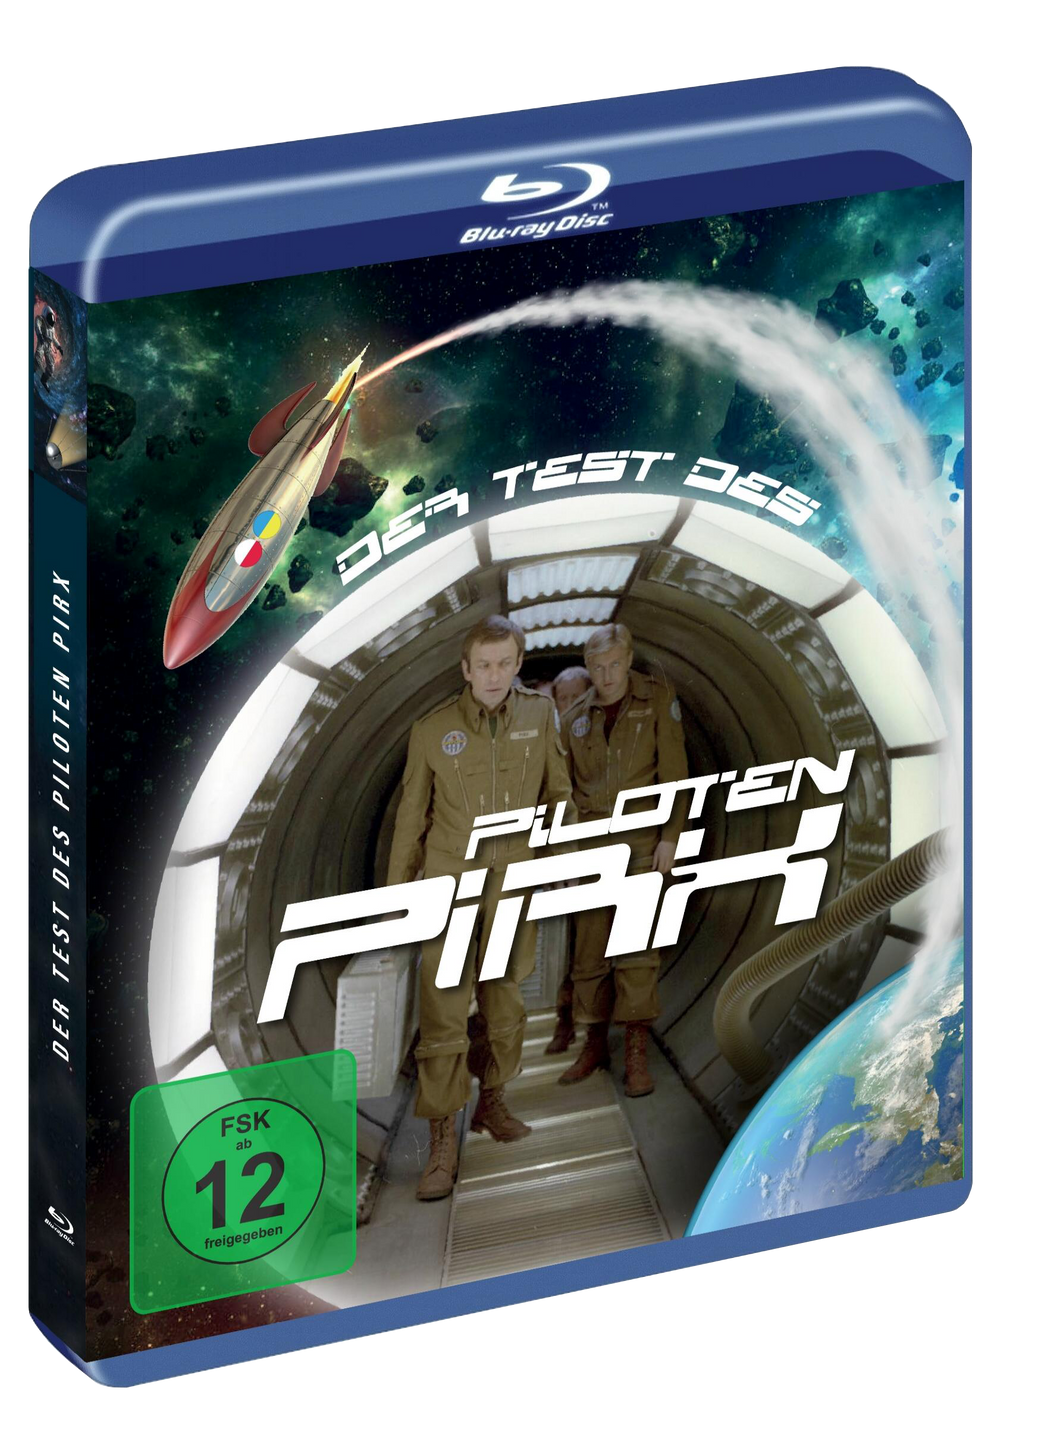 Der Test des Piloten Pirx (Blu-Ray)